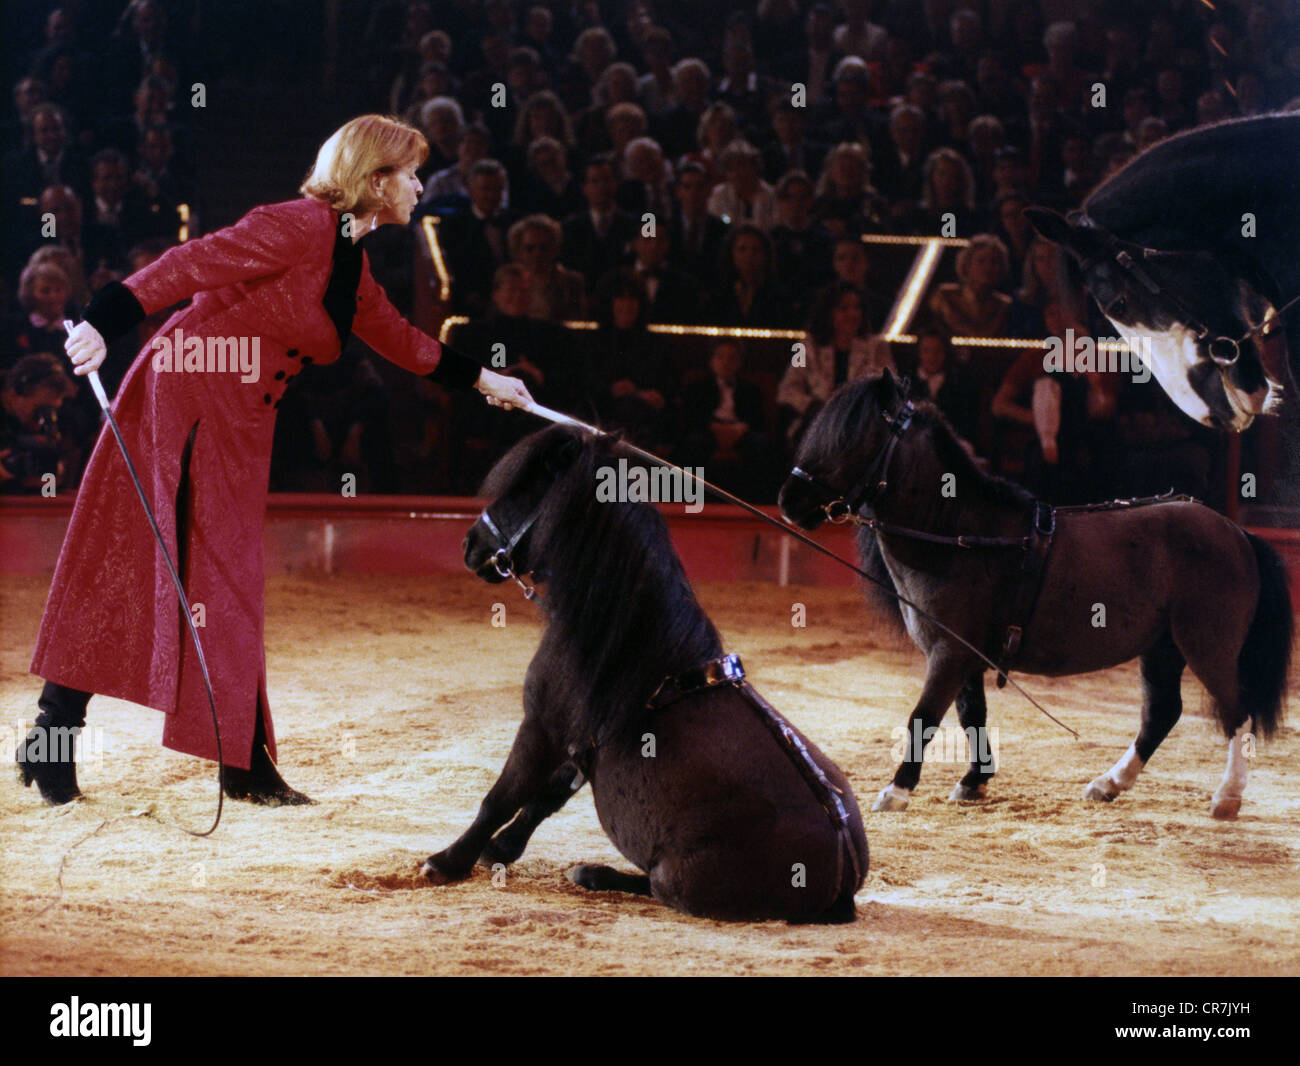 Berger, Senta, * 13.5.1941, attrice austriaca, a tutta lunghezza, durante un'azione a cavallo, nel programma televisivo tedesco 'Sars in der Manege', Circus Krone, Monaco di Baviera, dicembre 1996, Foto Stock